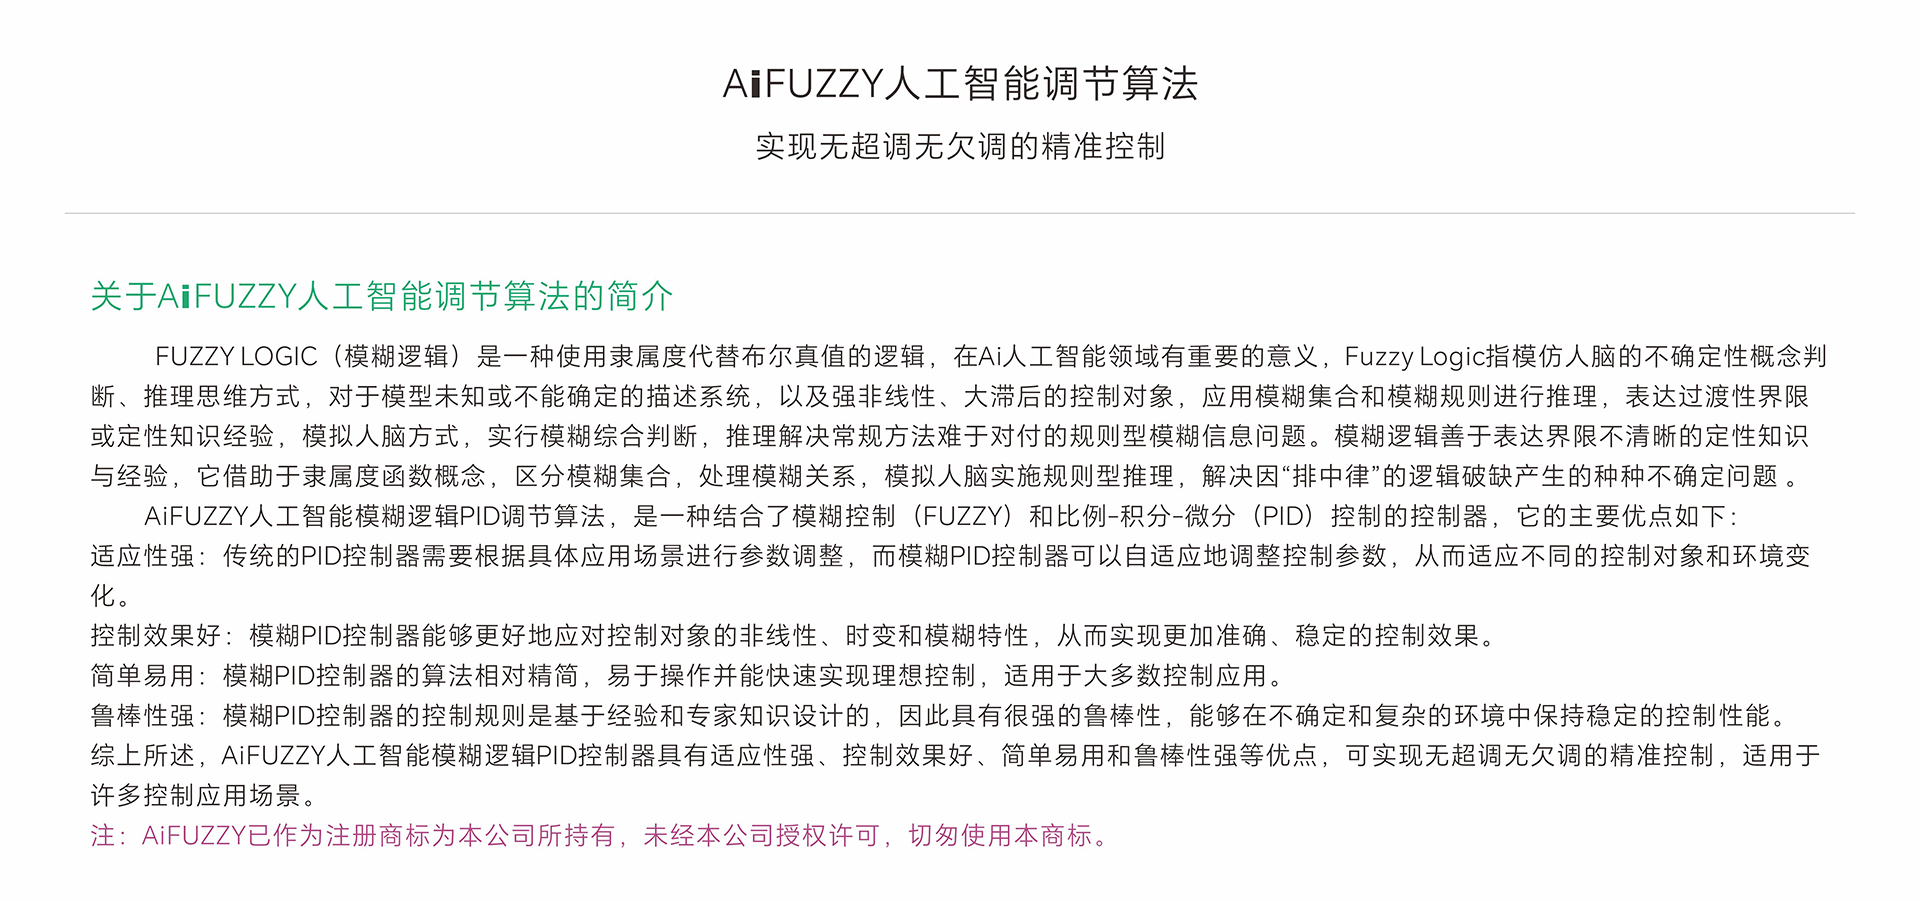 AiFUZZY8XX，9XX  调节算法描述-中文.jpg